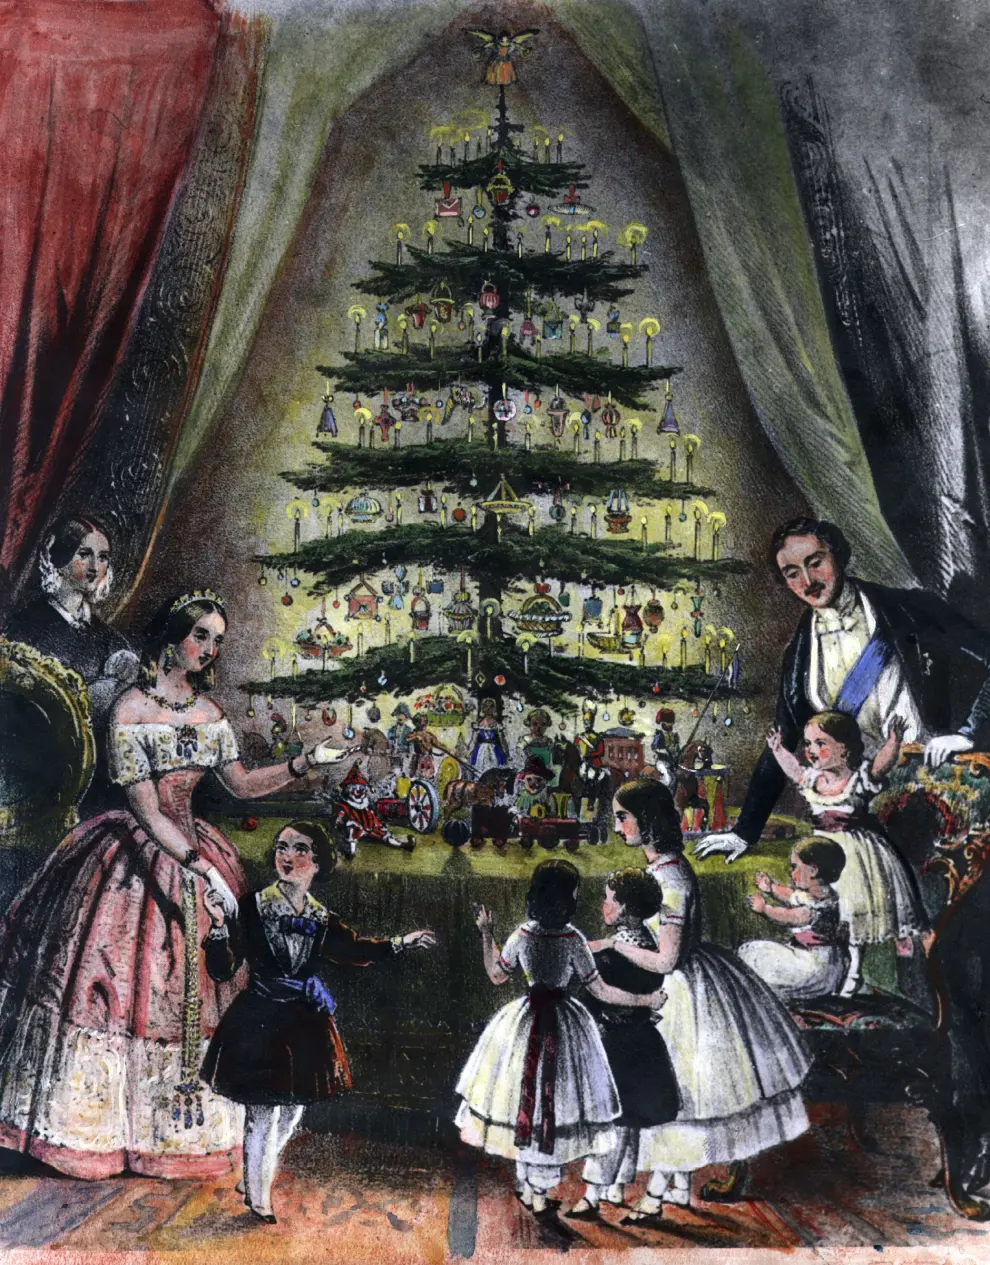 La reina Victoria de Inglaterra puso de moda decorar el árbol, tradición que ya tenía lugar en Alemania y que se remonta a leyendas escandinavas.